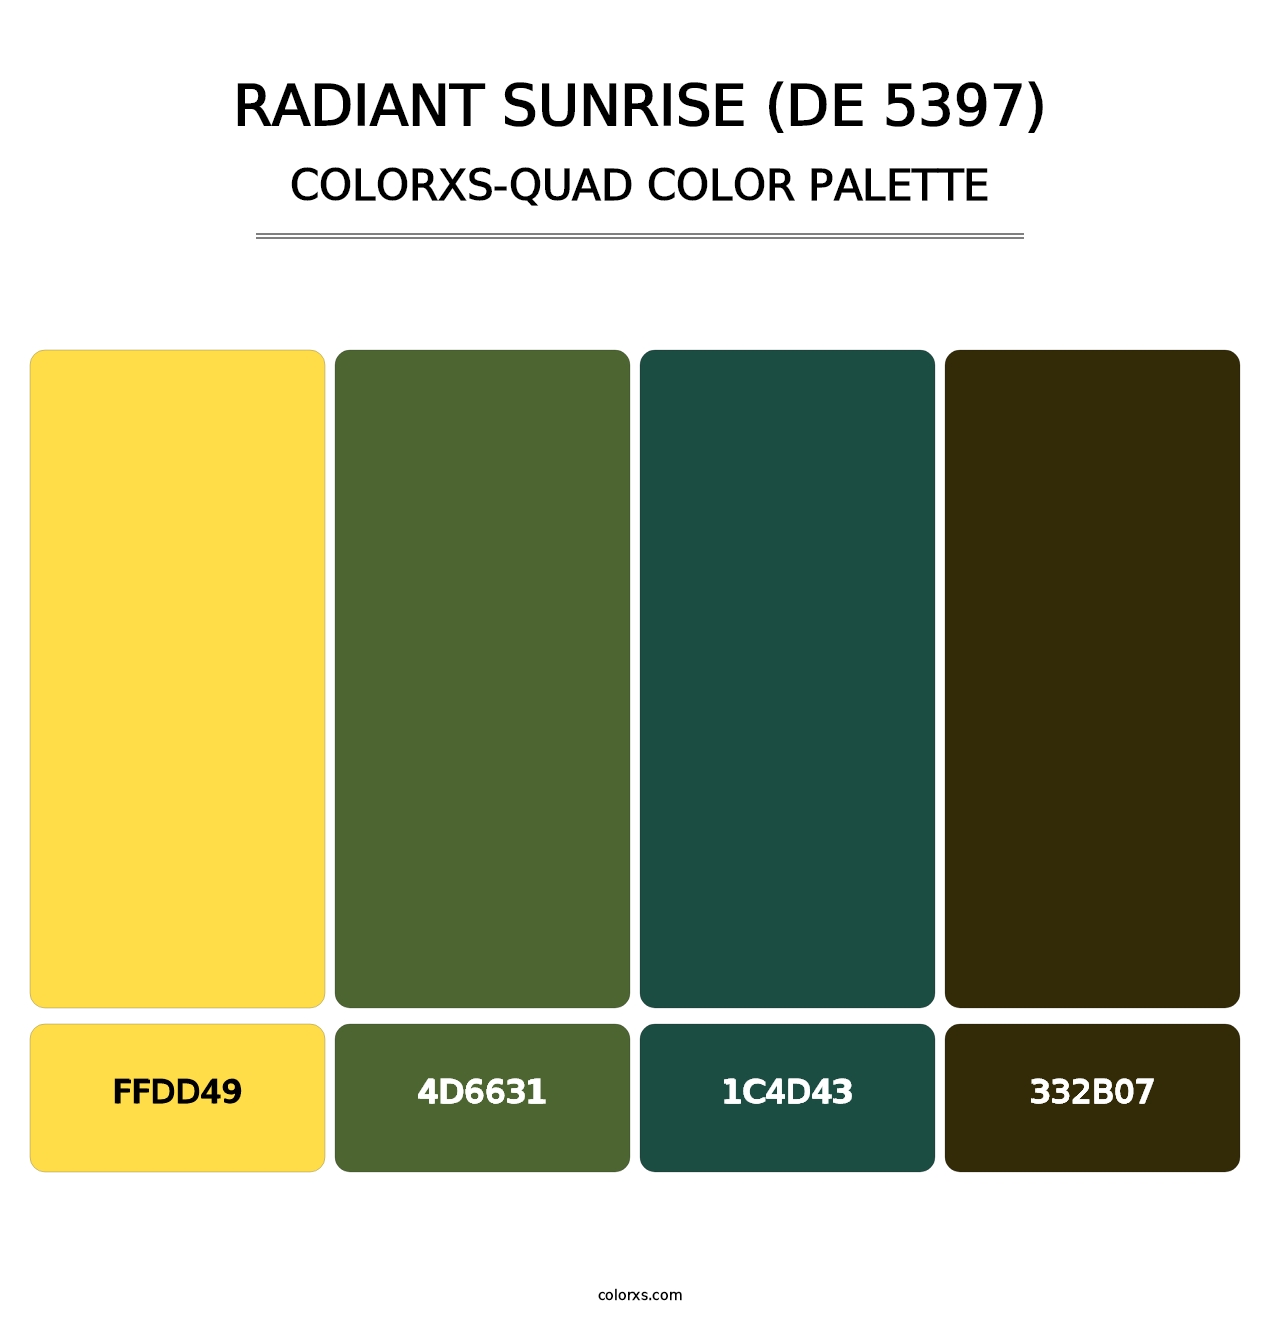 Radiant Sunrise (DE 5397) - Colorxs Quad Palette